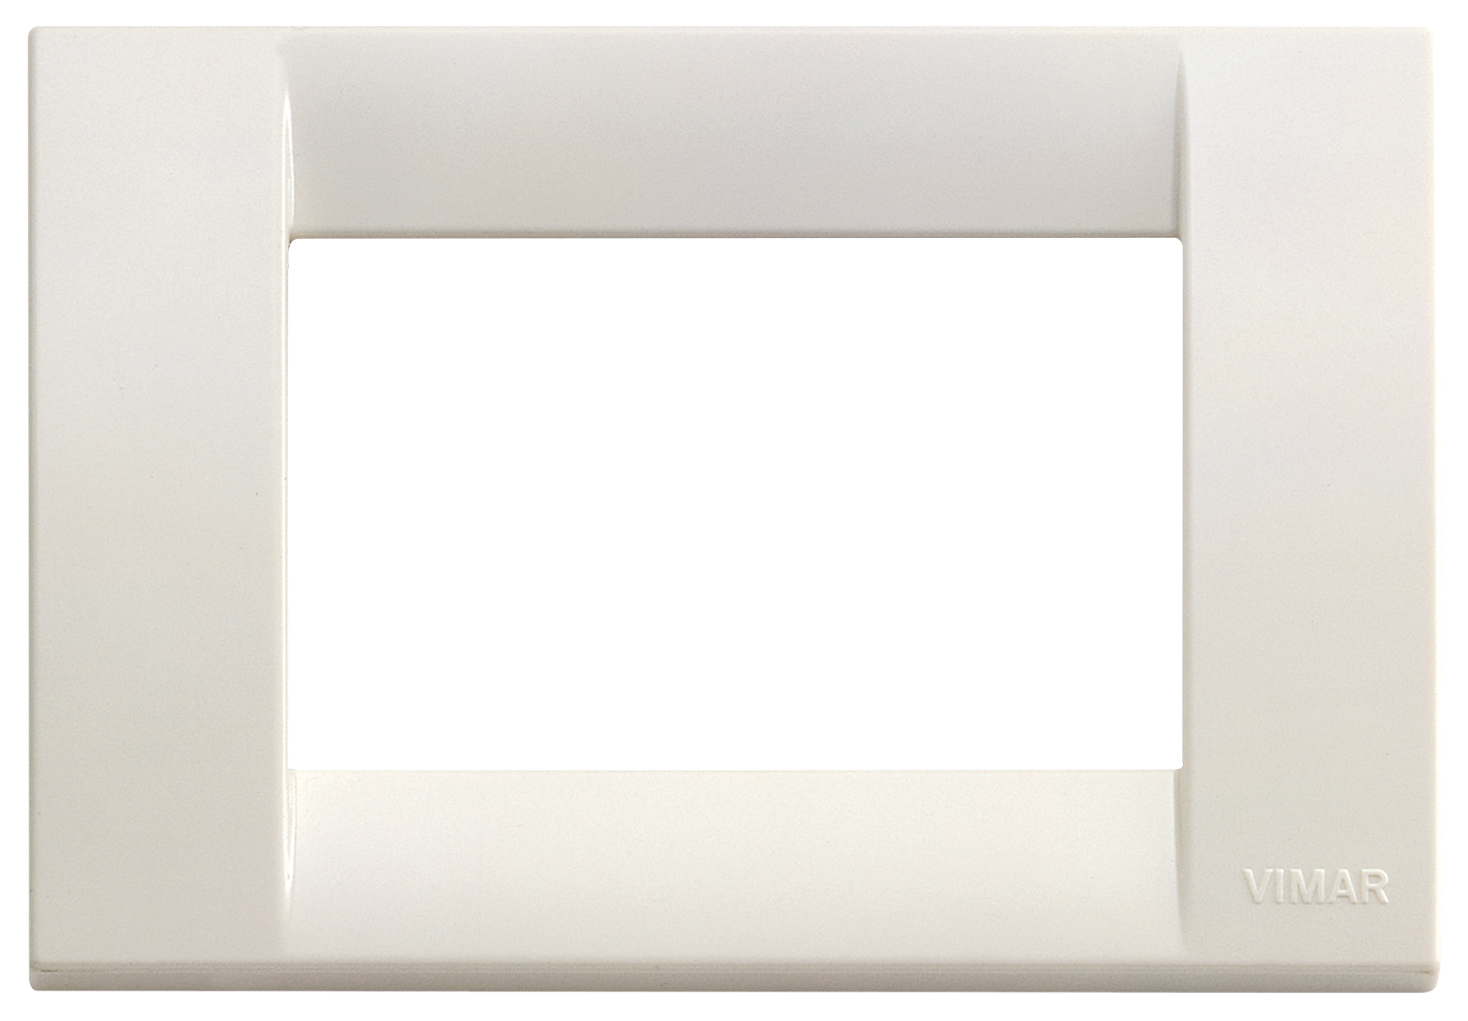 Elettro Funiciello - Placca Vimar Linea 30653.40 3 moduli colore bianco  reflex - Placche Vimar Linea